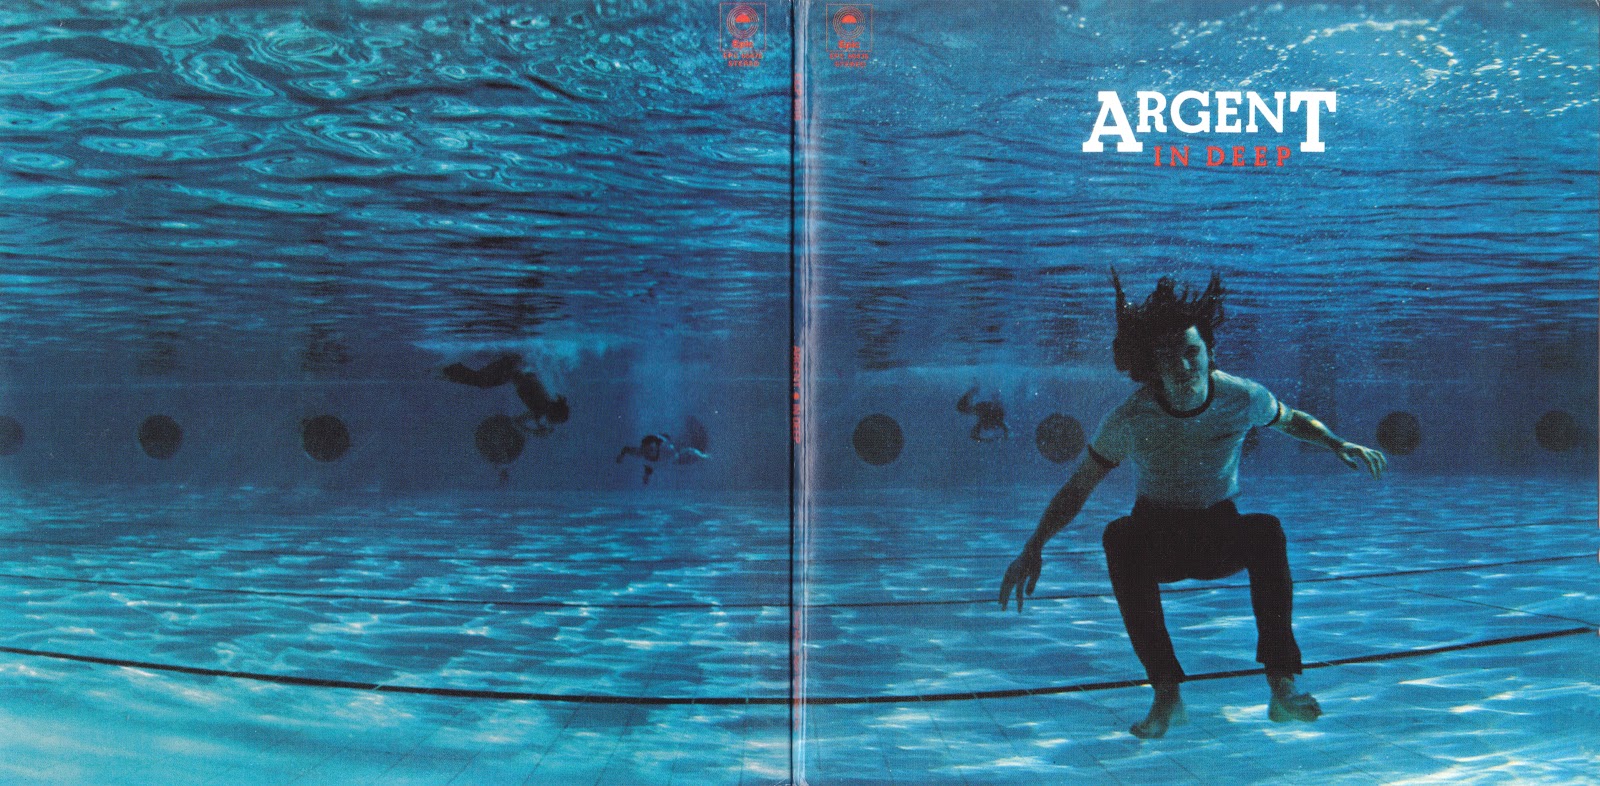 Deep scene. Argent - in Deep. Argent - in Deep - 1973. In Deep (argent album). Argent - in Deep CD.